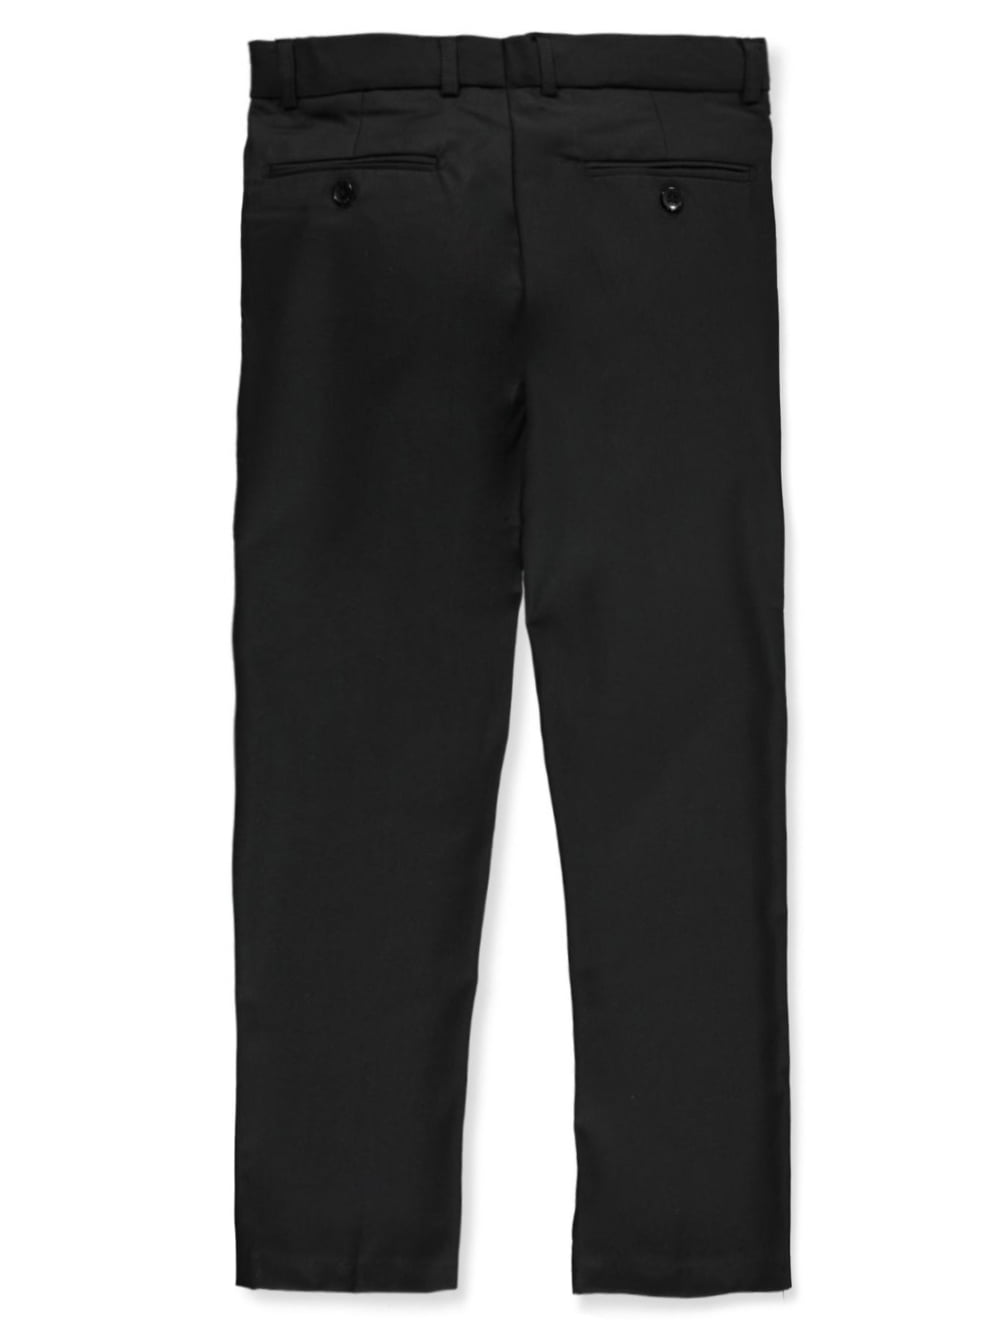 Suit trousers Straight Fit - Black - Men | H&M